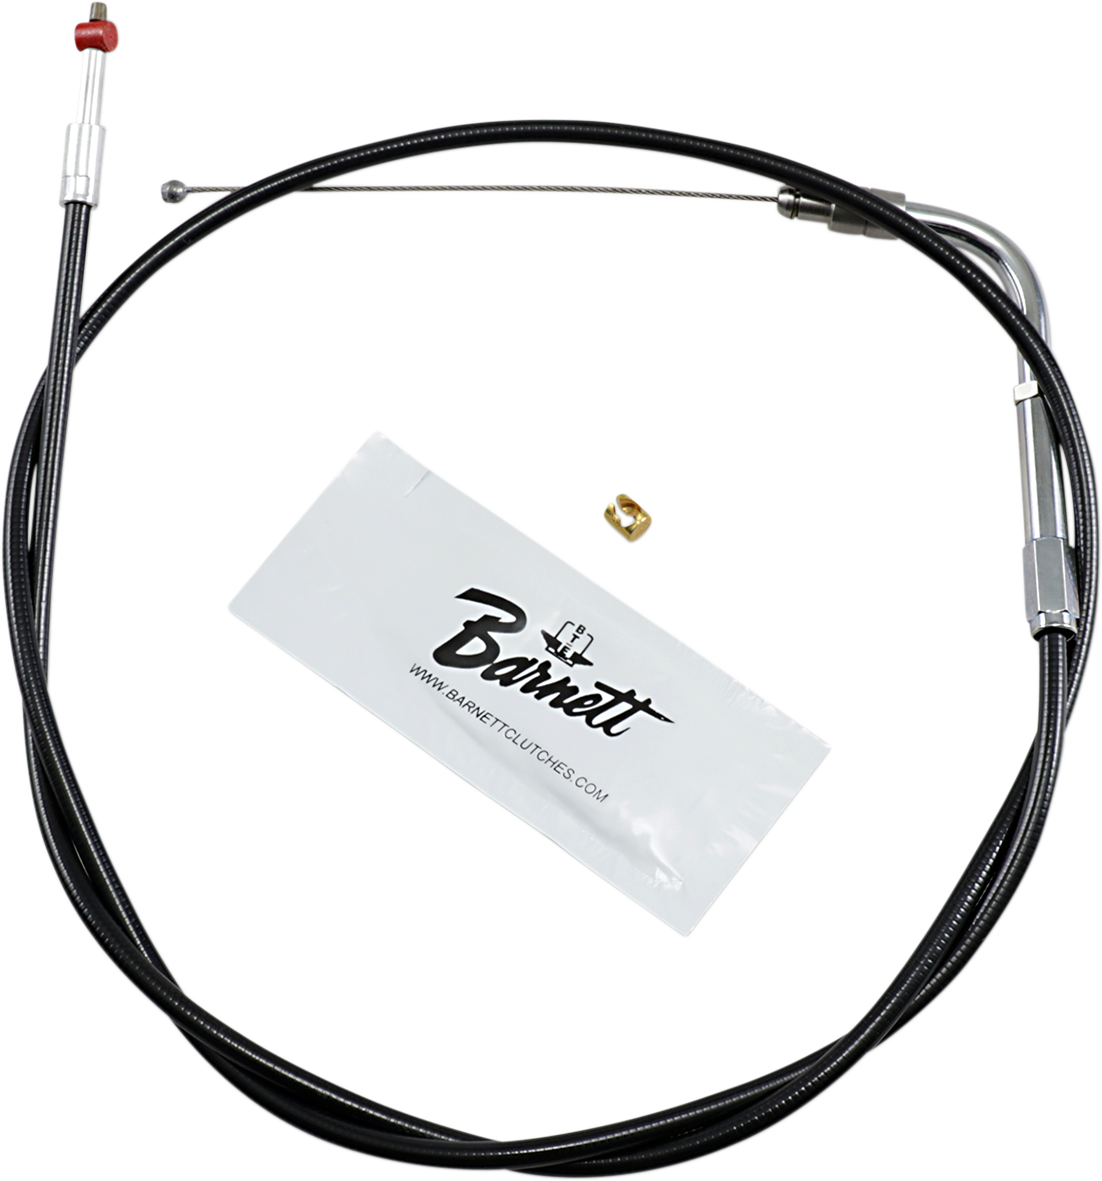 Cable del acelerador BARNETT - +6" - Negro 101-30-30012-06 